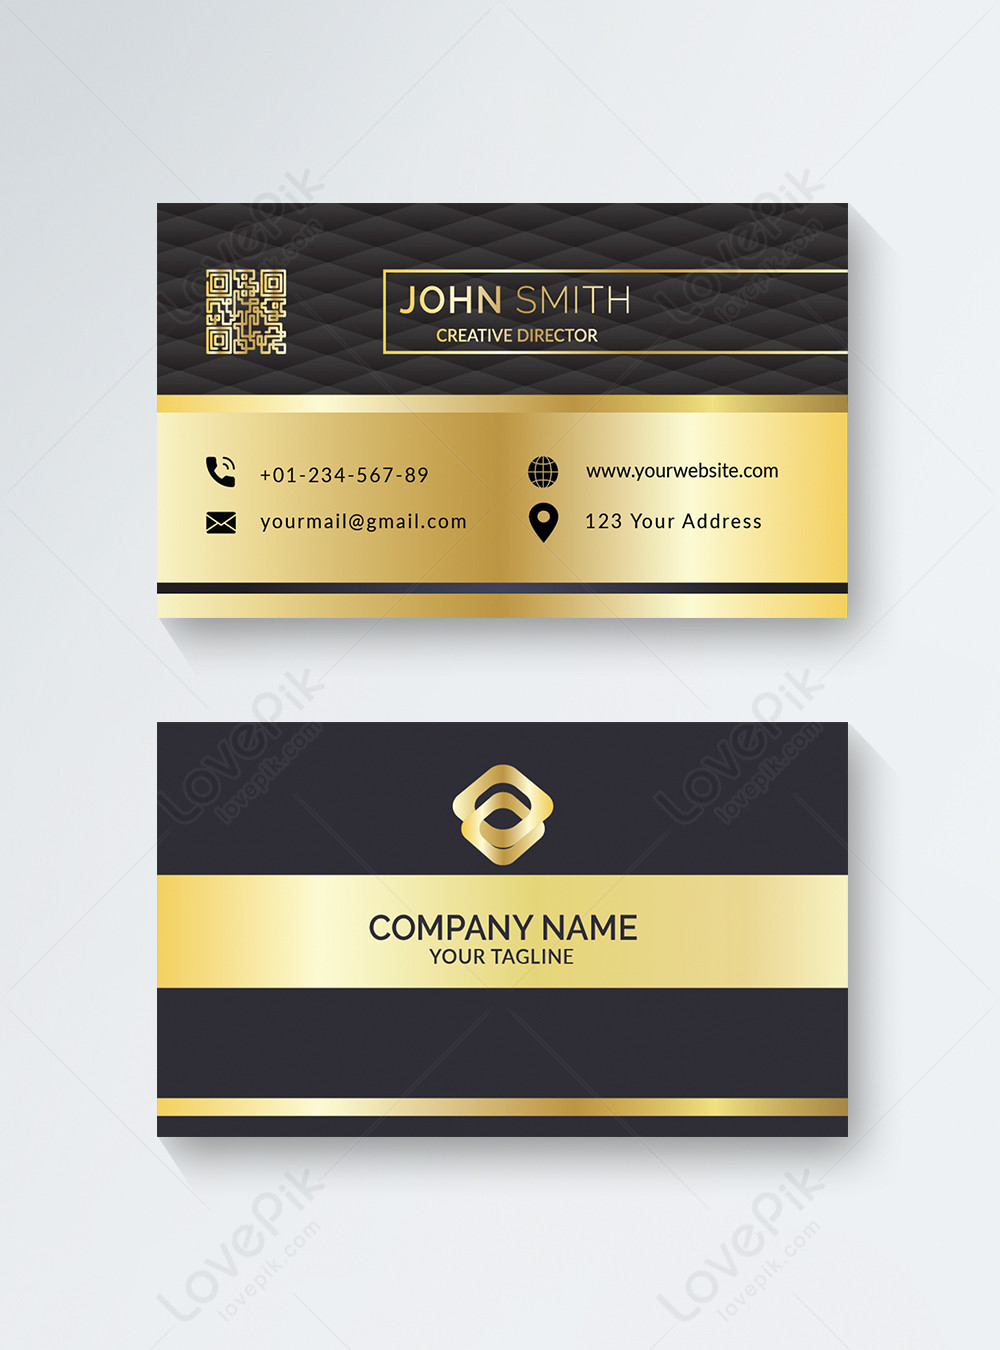 Thẻ danh thiếp sang trọng: Thể hiện phong cách và đẳng cấp của bạn với thẻ danh thiếp sang trọng. Với các mẫu thiết kế tinh tế, đầy đủ thông tin cá nhân và logo công ty, thẻ danh thiếp của bạn sẽ trở thành bề ngoài hoàn hảo cho doanh nghiệp của bạn.